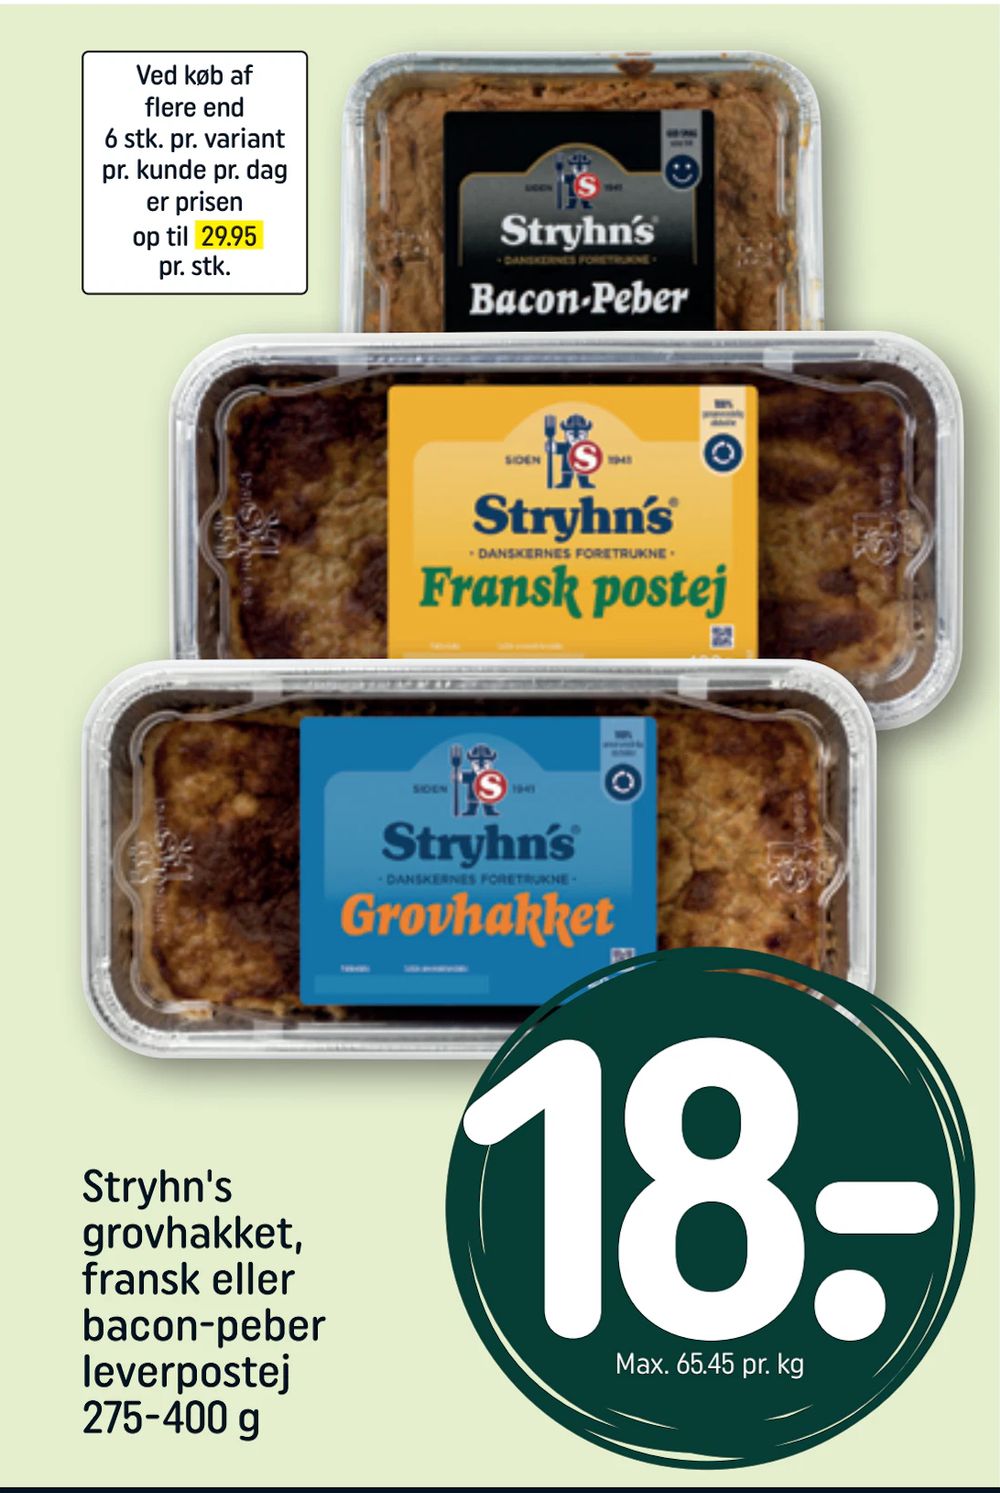 Tilbud på Stryhn's grovhakket, fransk eller bacon-peber leverpostej 275-400 g fra REMA 1000 til 18 kr.